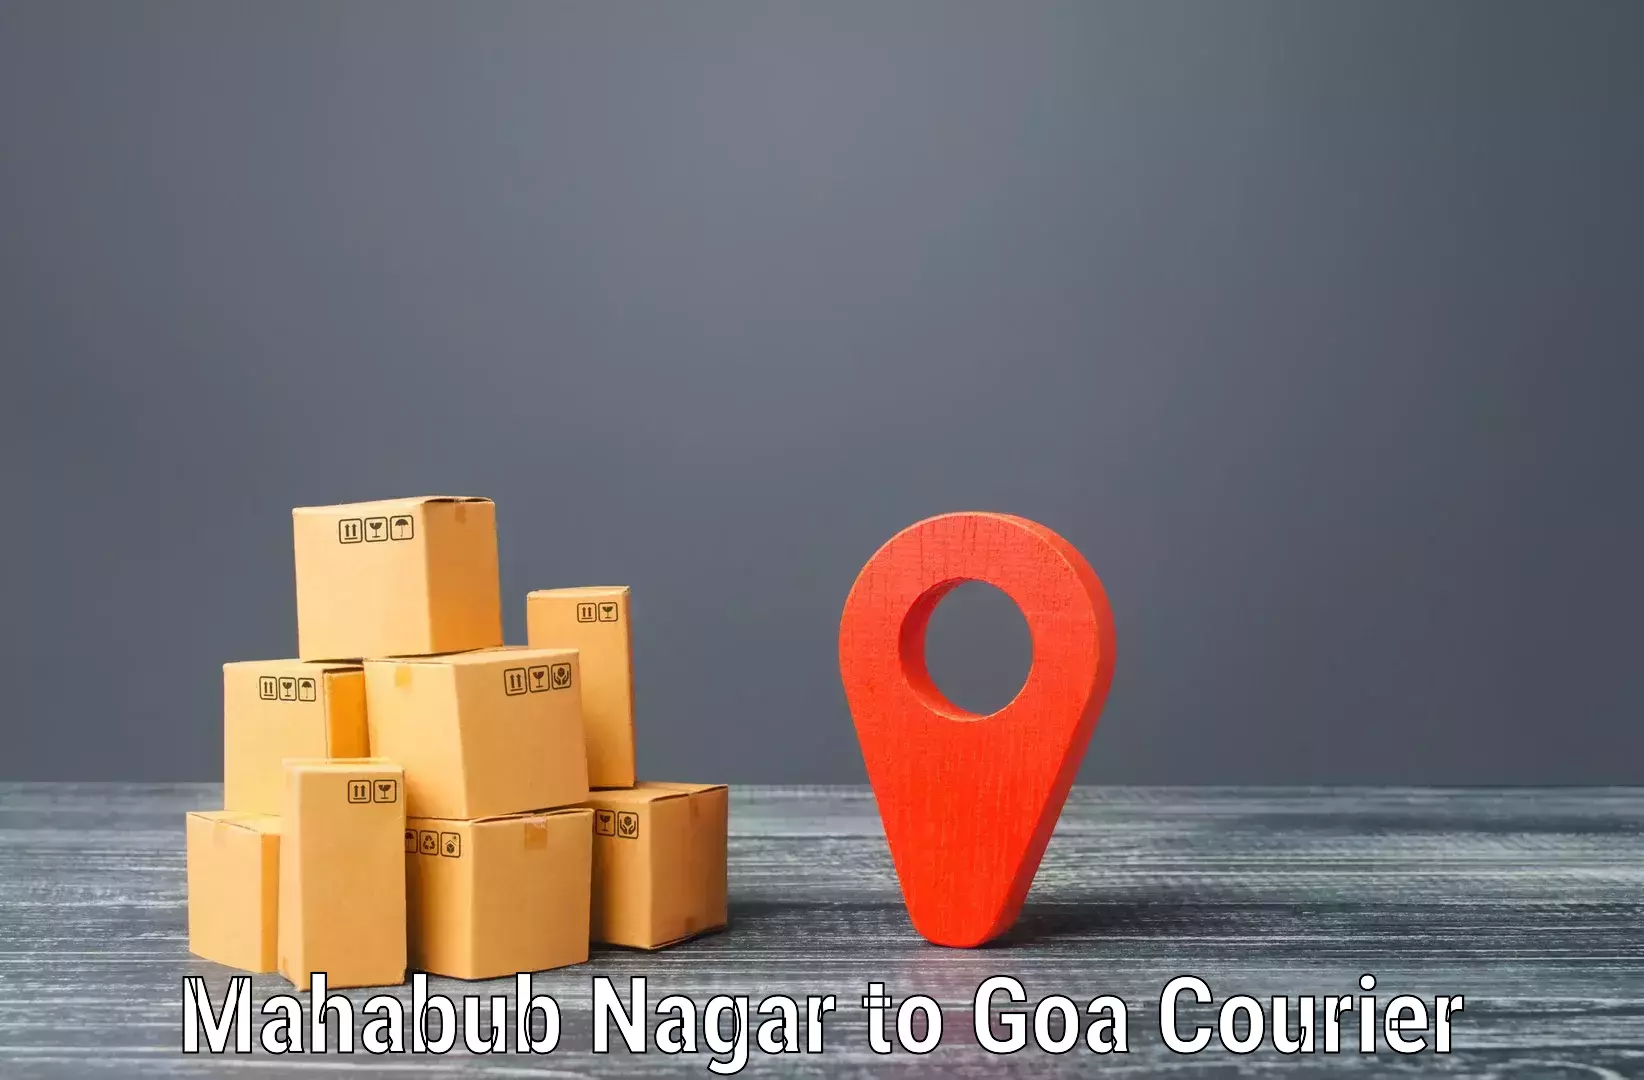 Quick booking process Mahabub Nagar to Mormugao Port